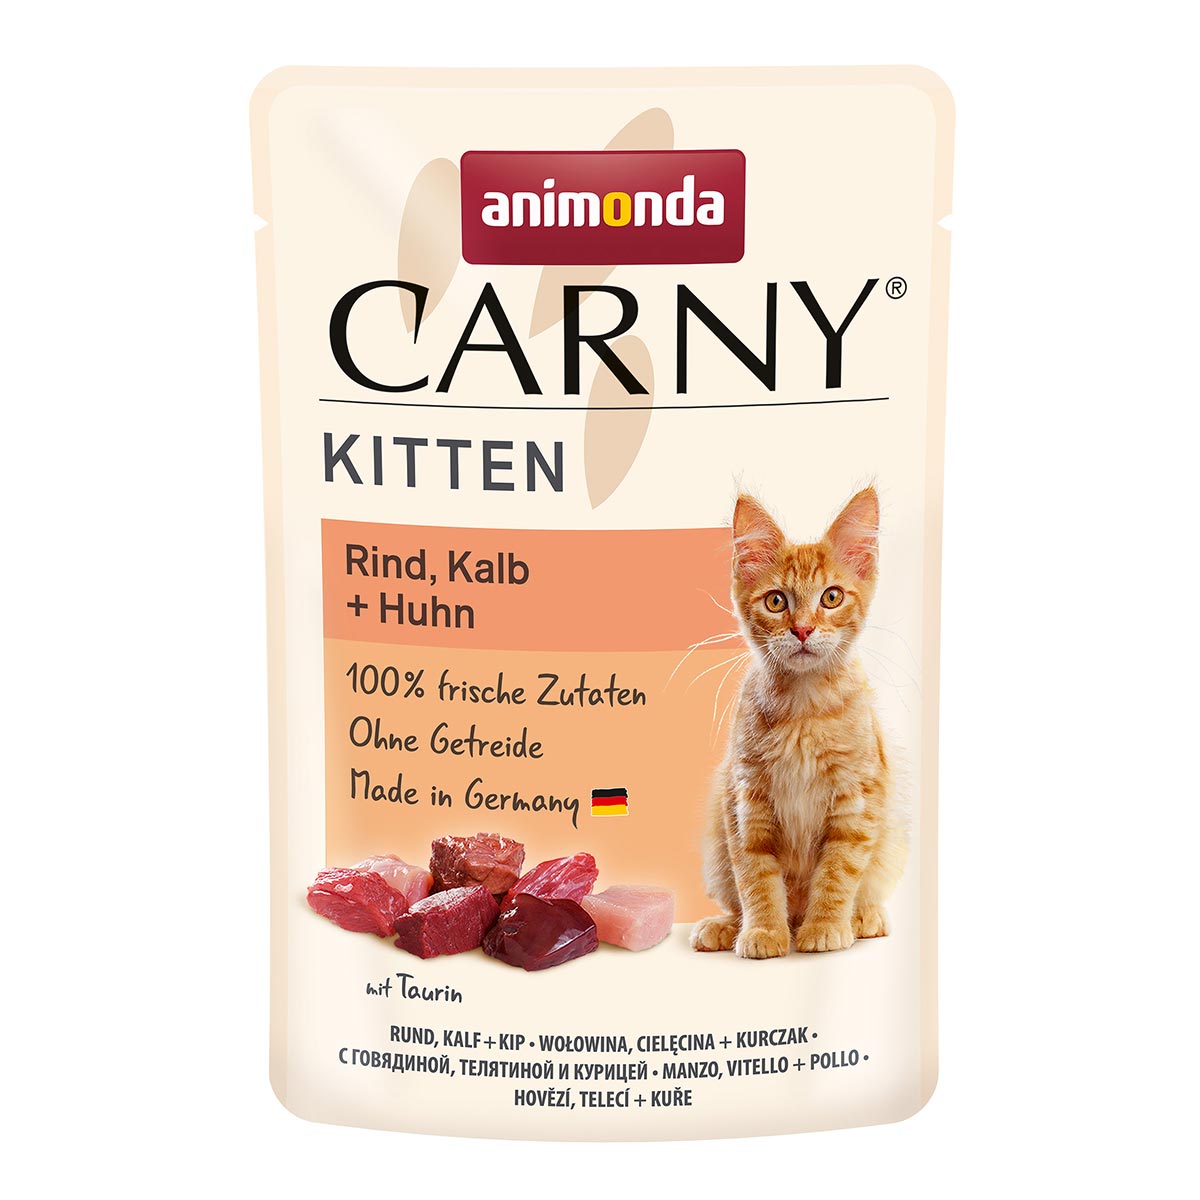 animonda Carny Kitten Rind, Kalb + Huhn 24x85g von animonda Carny